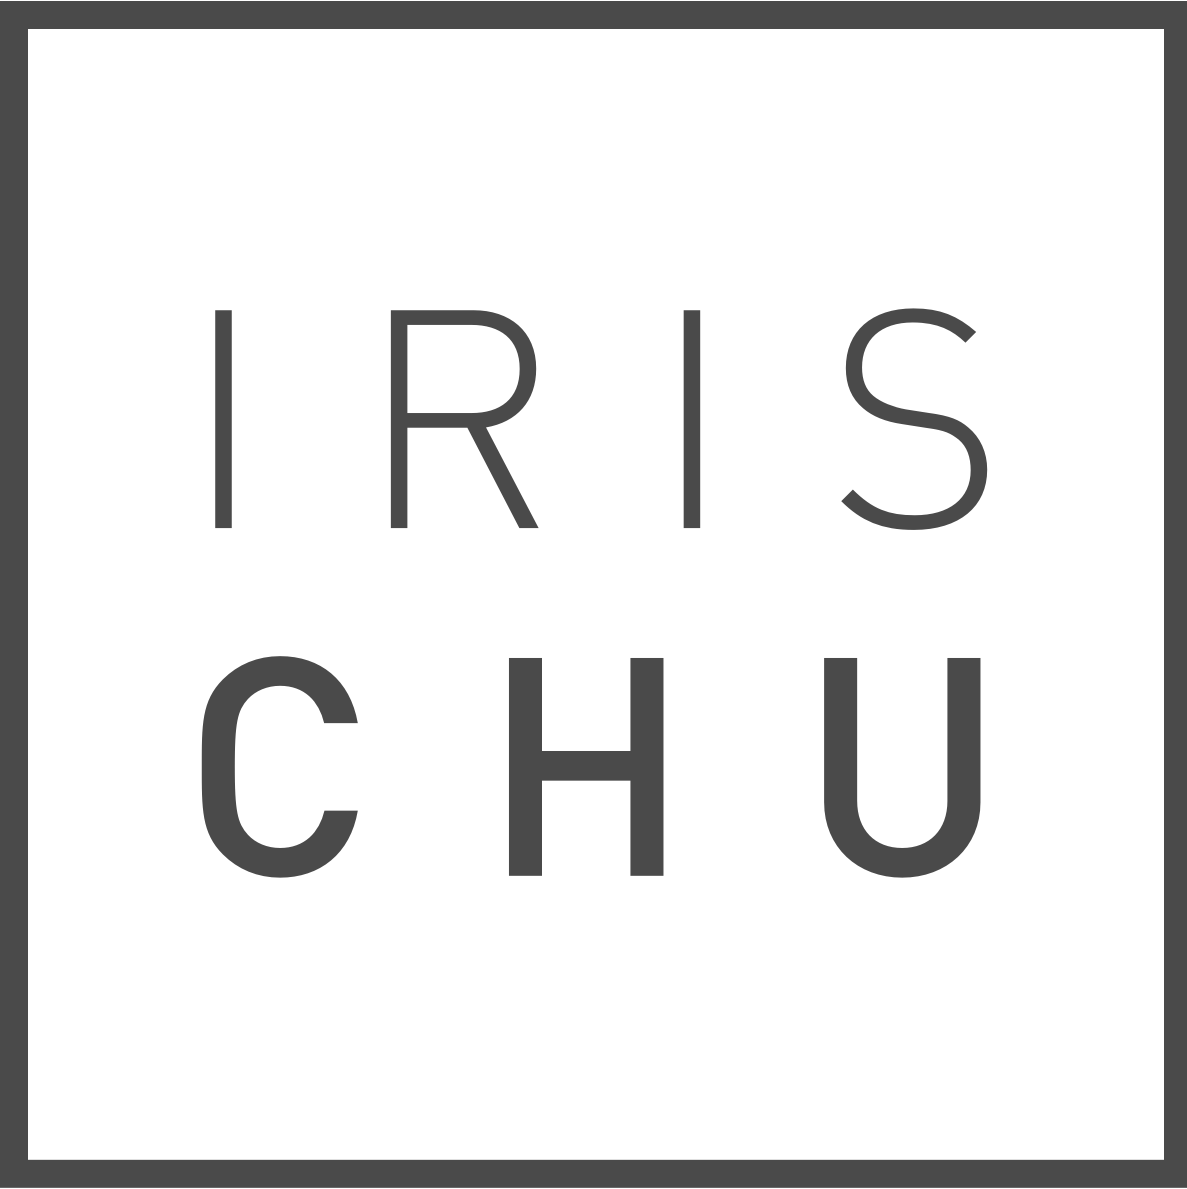 Iris Chu